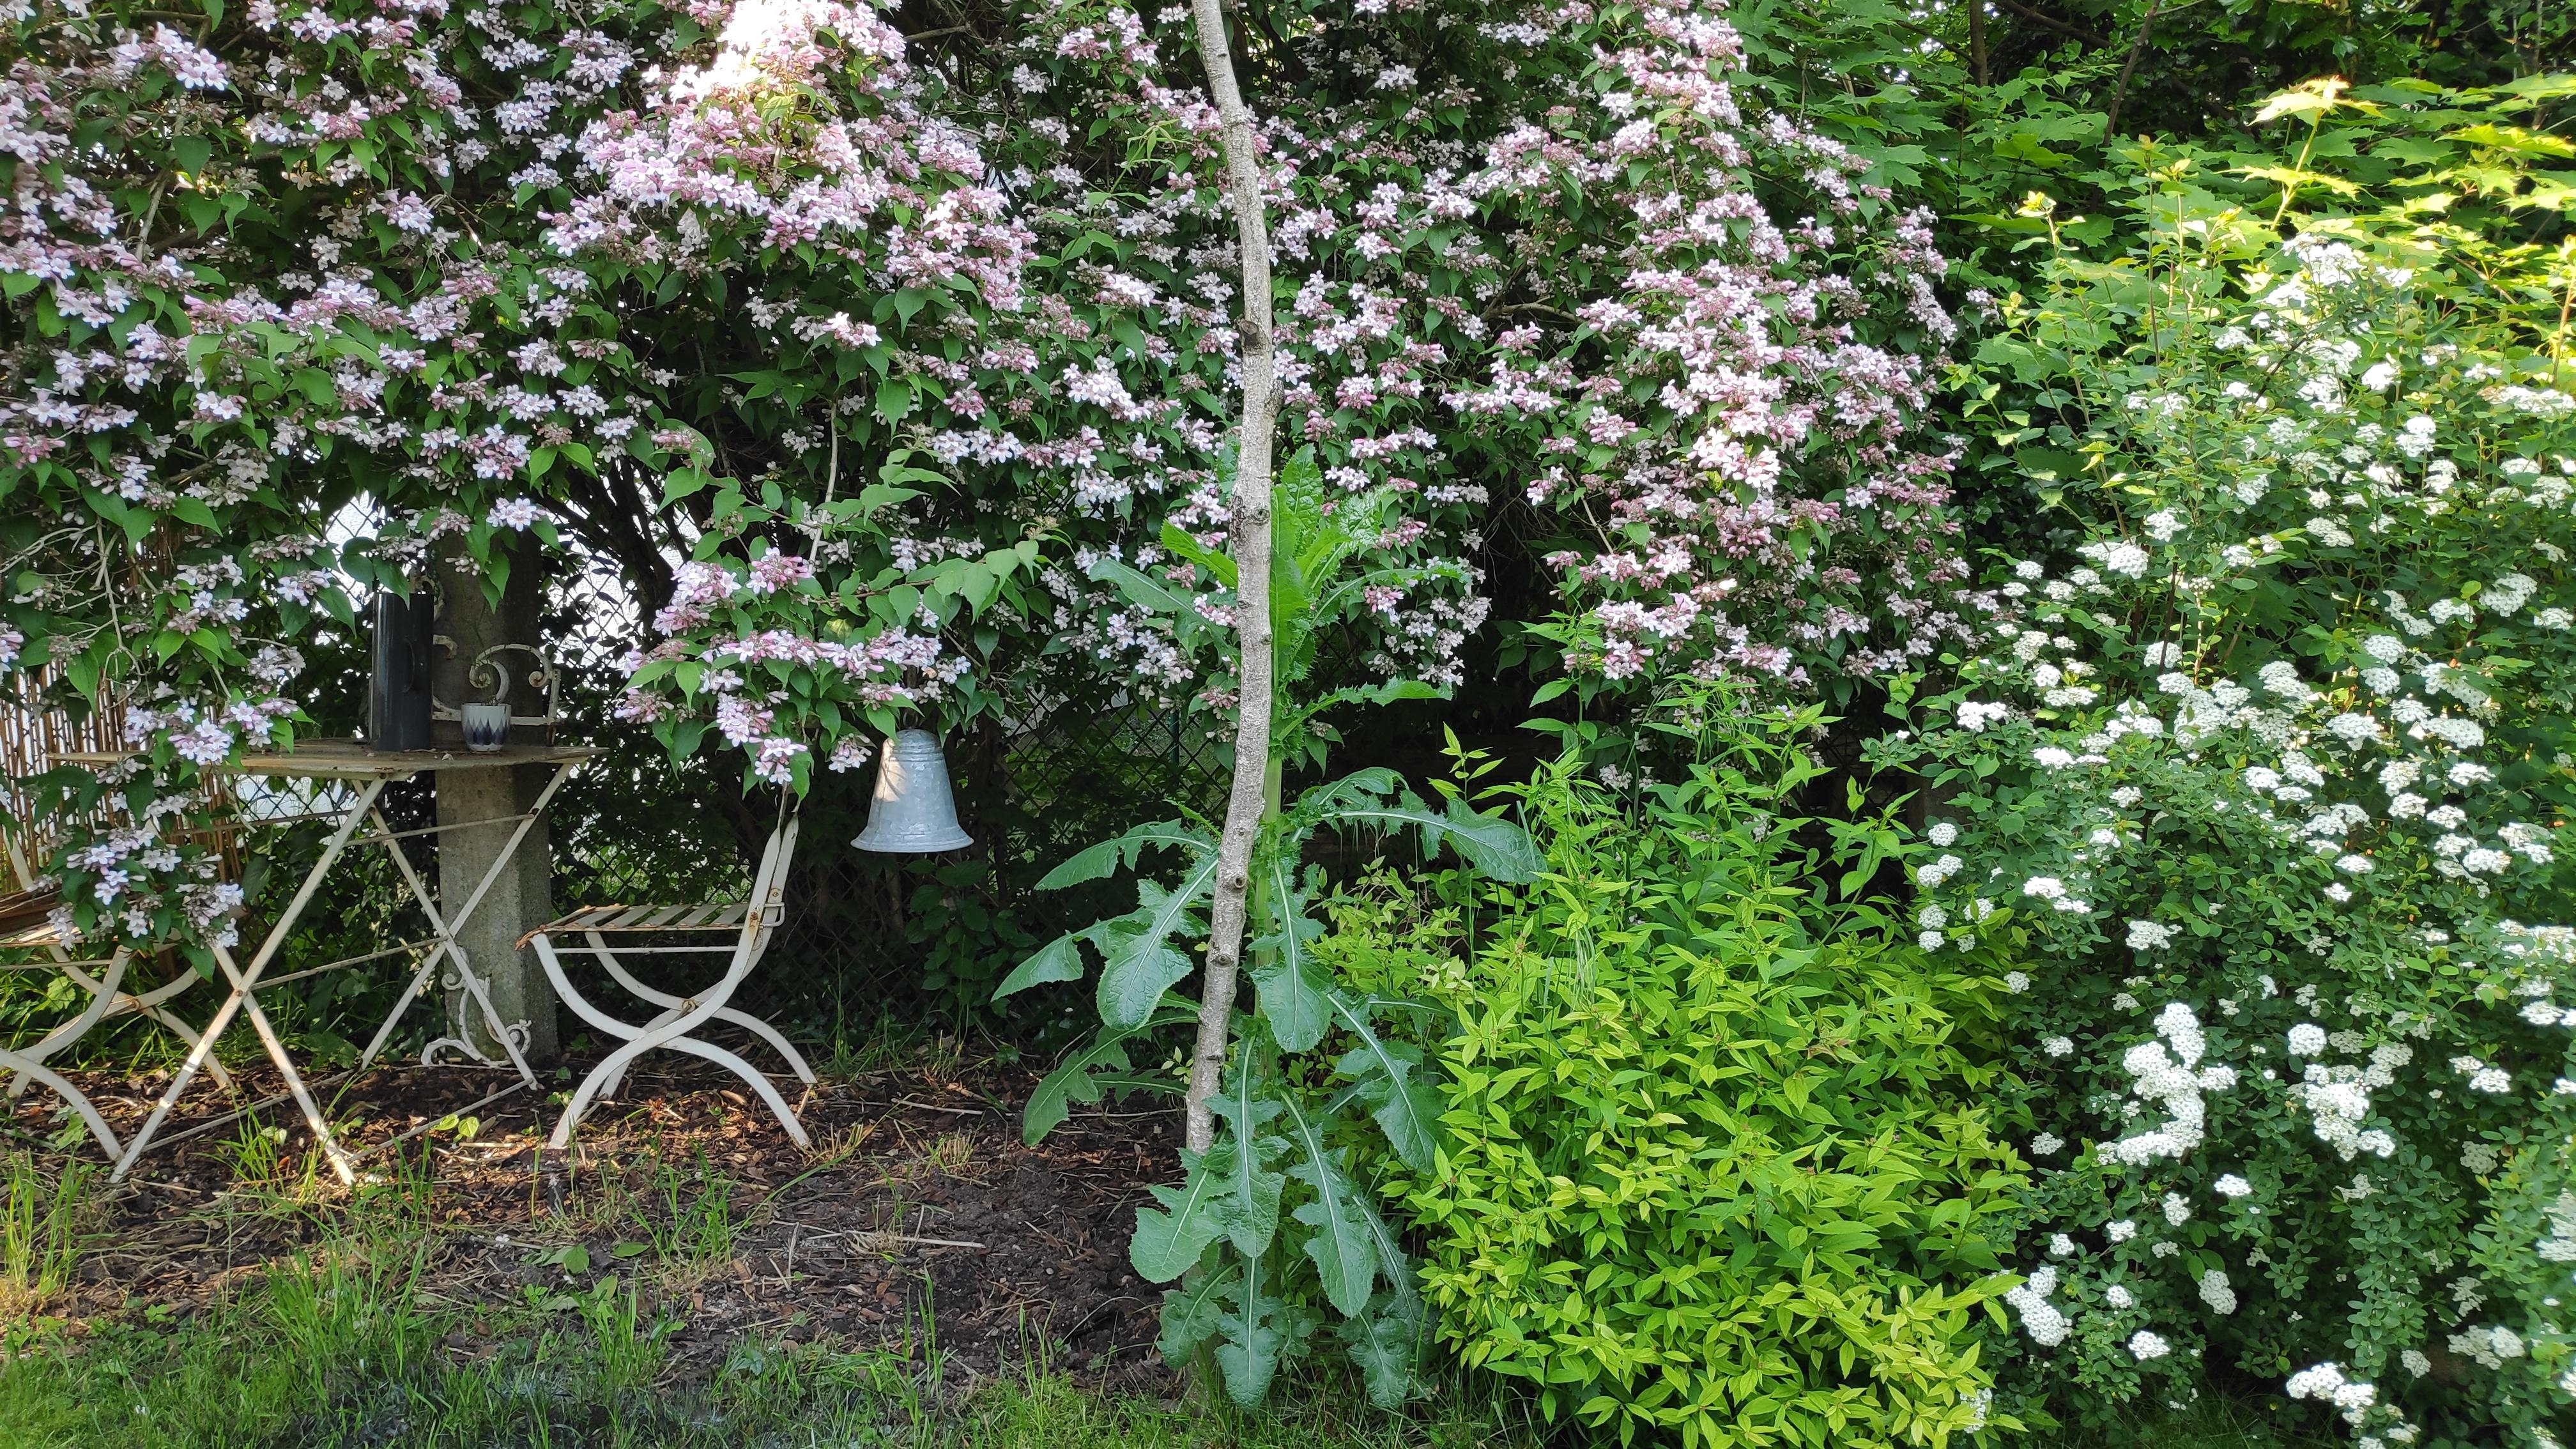 .Blumendach.
#Kolkwitzie #Gartengestaltung #Garten #Gartenmöbel #Metallmöbel #Ruheeck